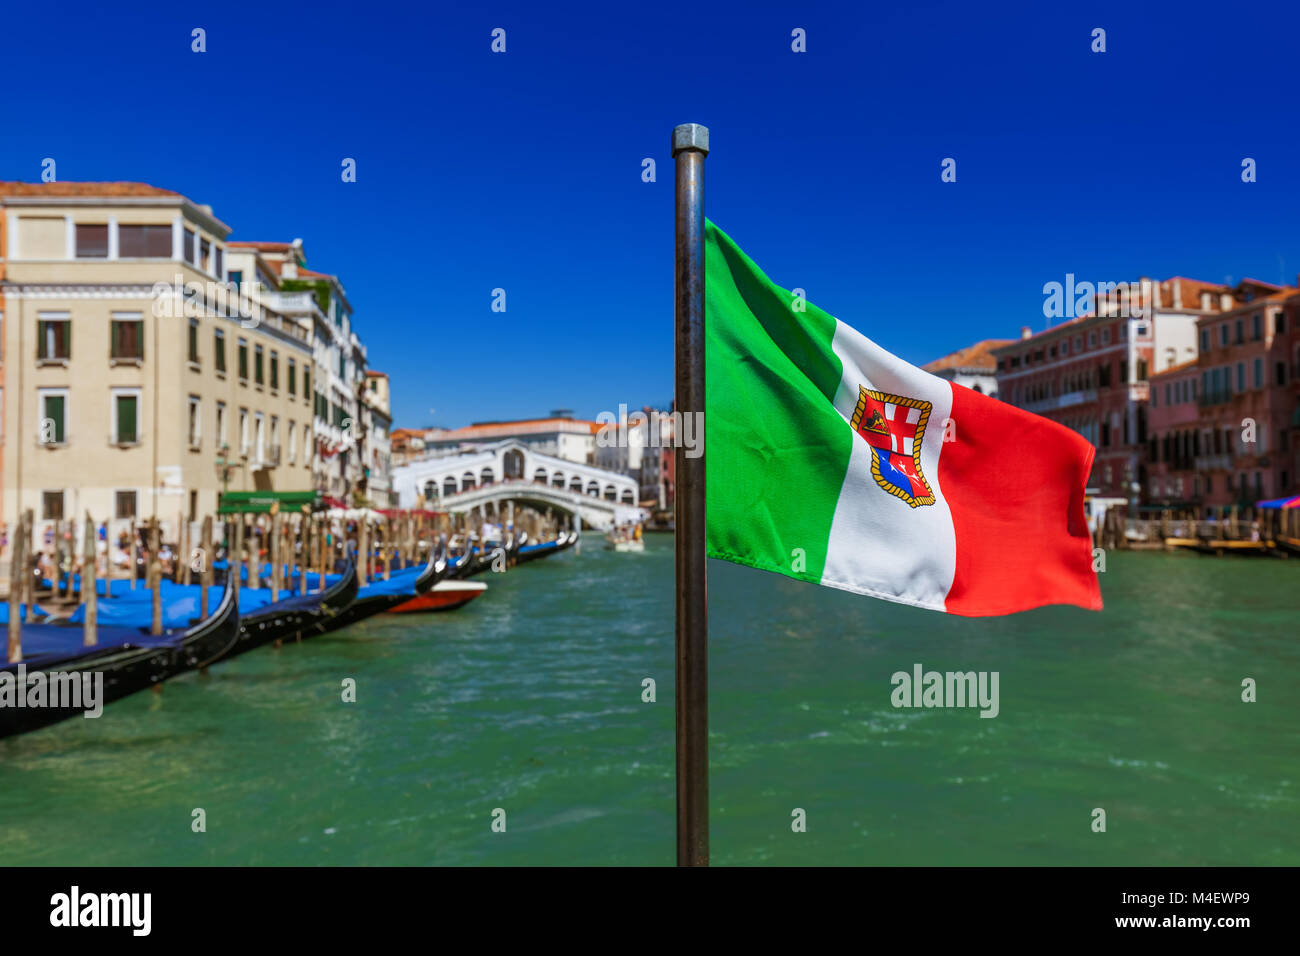 Bandiera e paesaggio urbano di Venezia - Italia Foto Stock